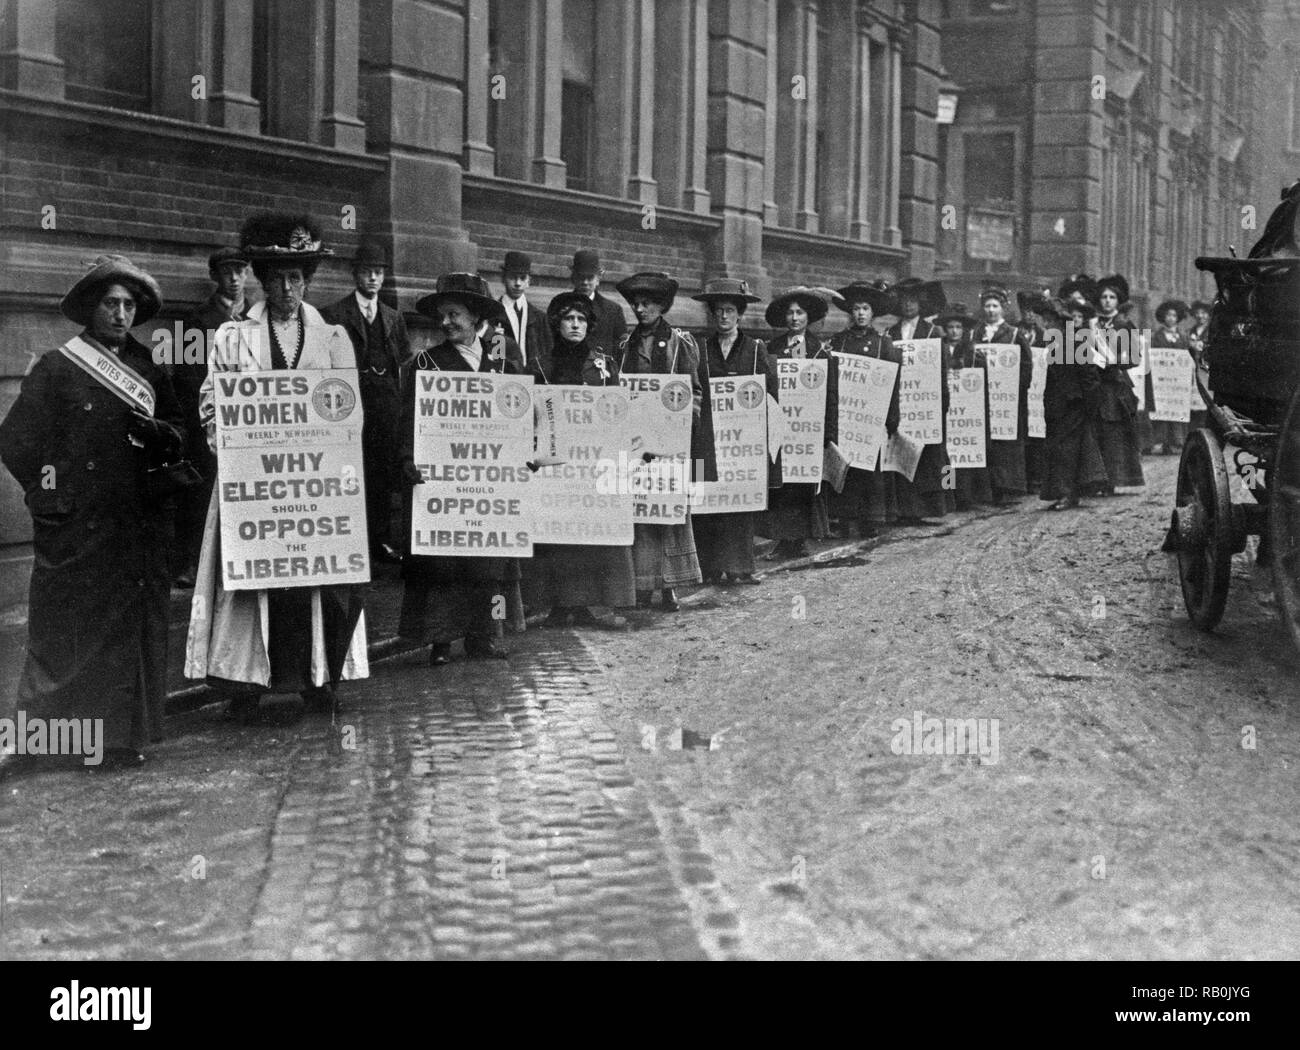 London 1910. Mitglieder der Suffragettenbewegung Kampagne der Frauen gegen die britische Liberale Partei vor der Bundestagswahl 1910. Stockfoto